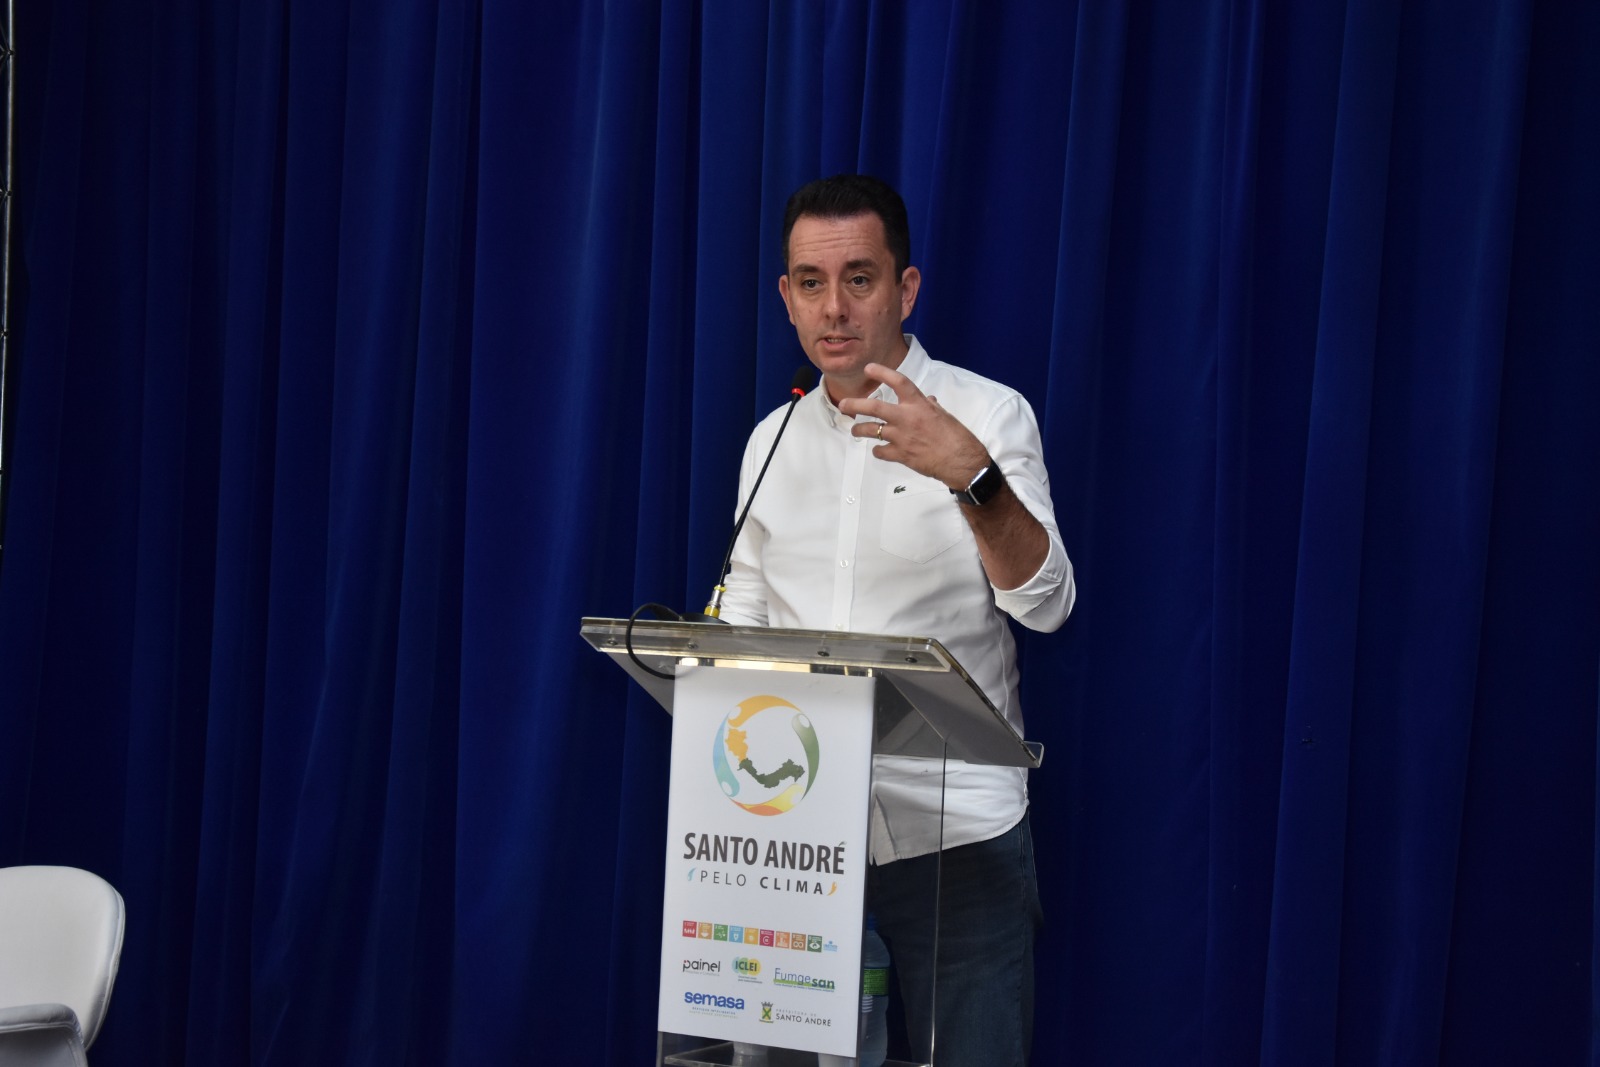 Santo André realiza evento para fomentar ações de resiliência contra a crise climática